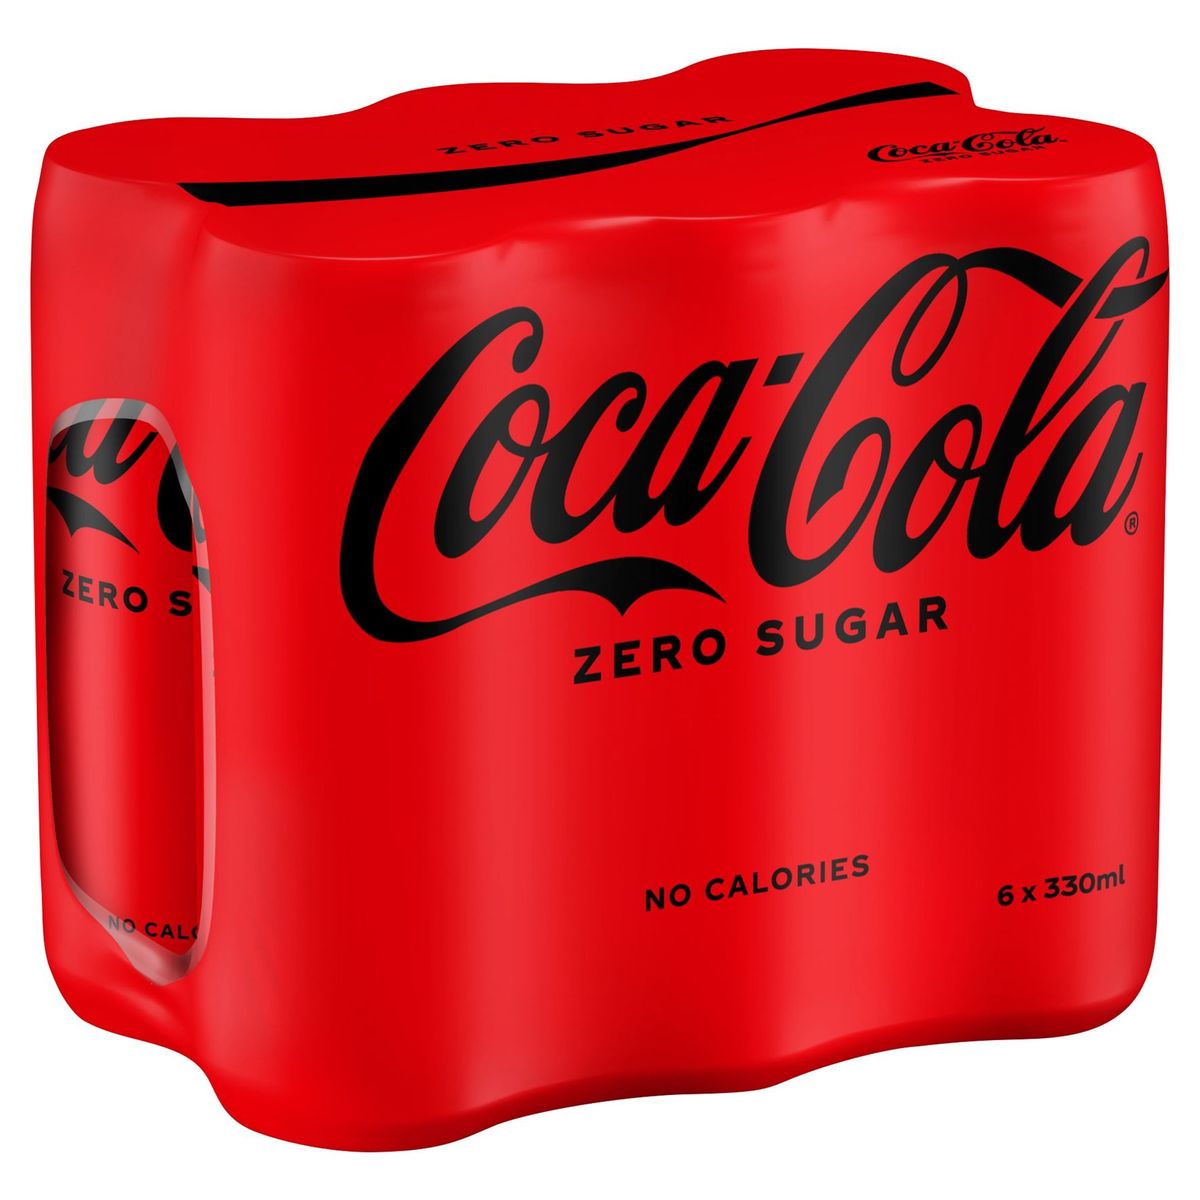 Coca-Cola Zero Coke Soft drink Canette 6 x 330 ml